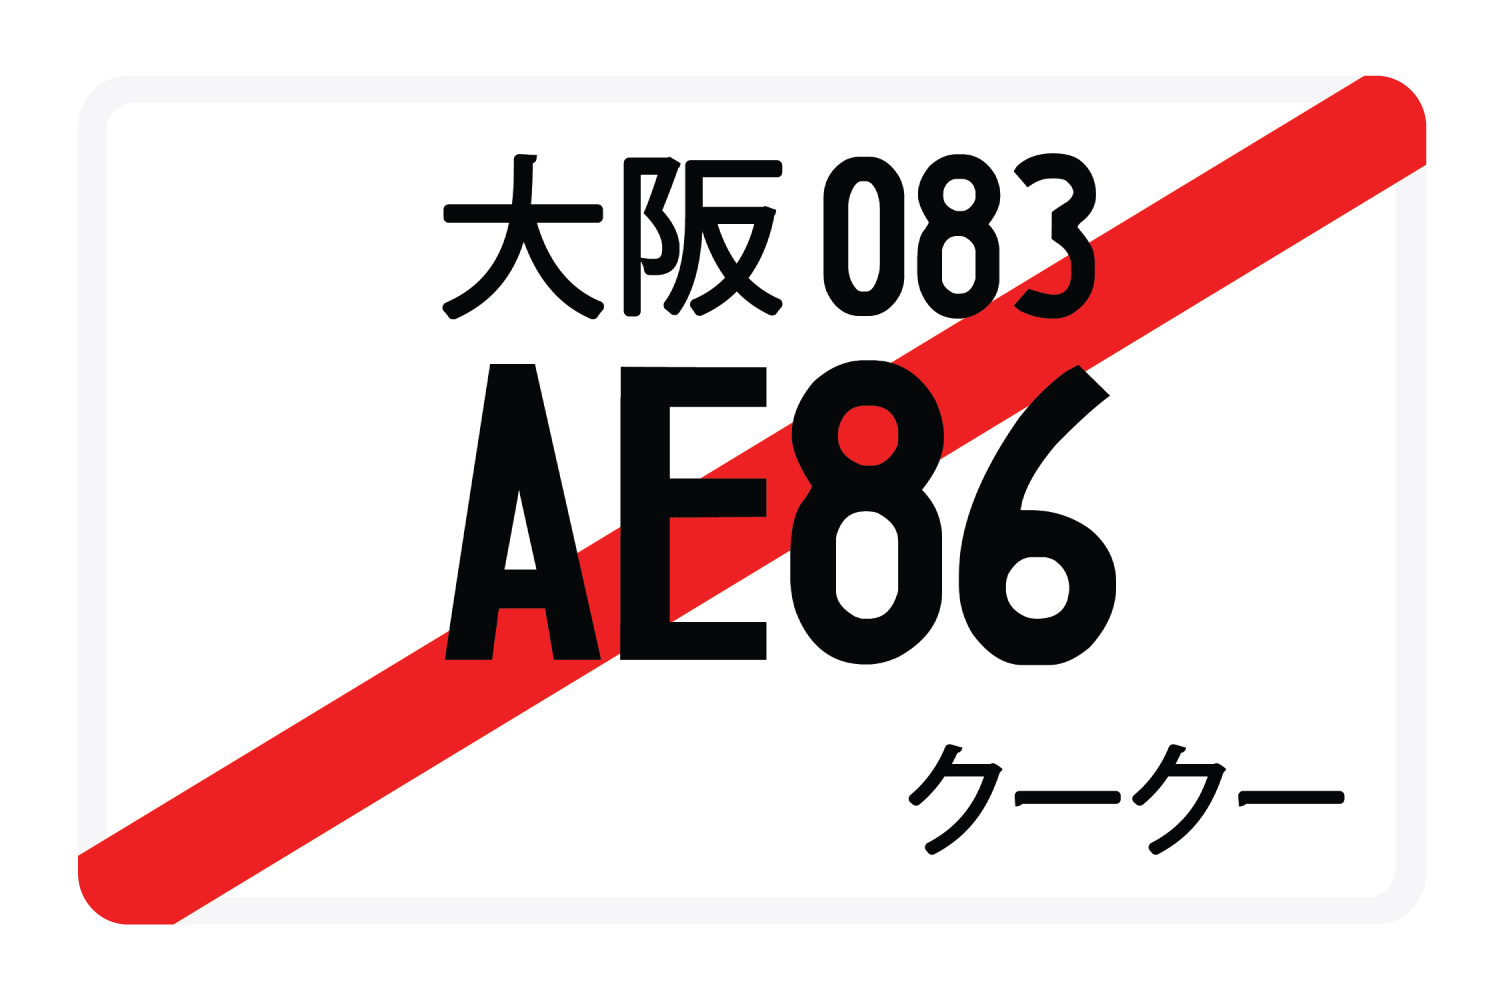 AE86